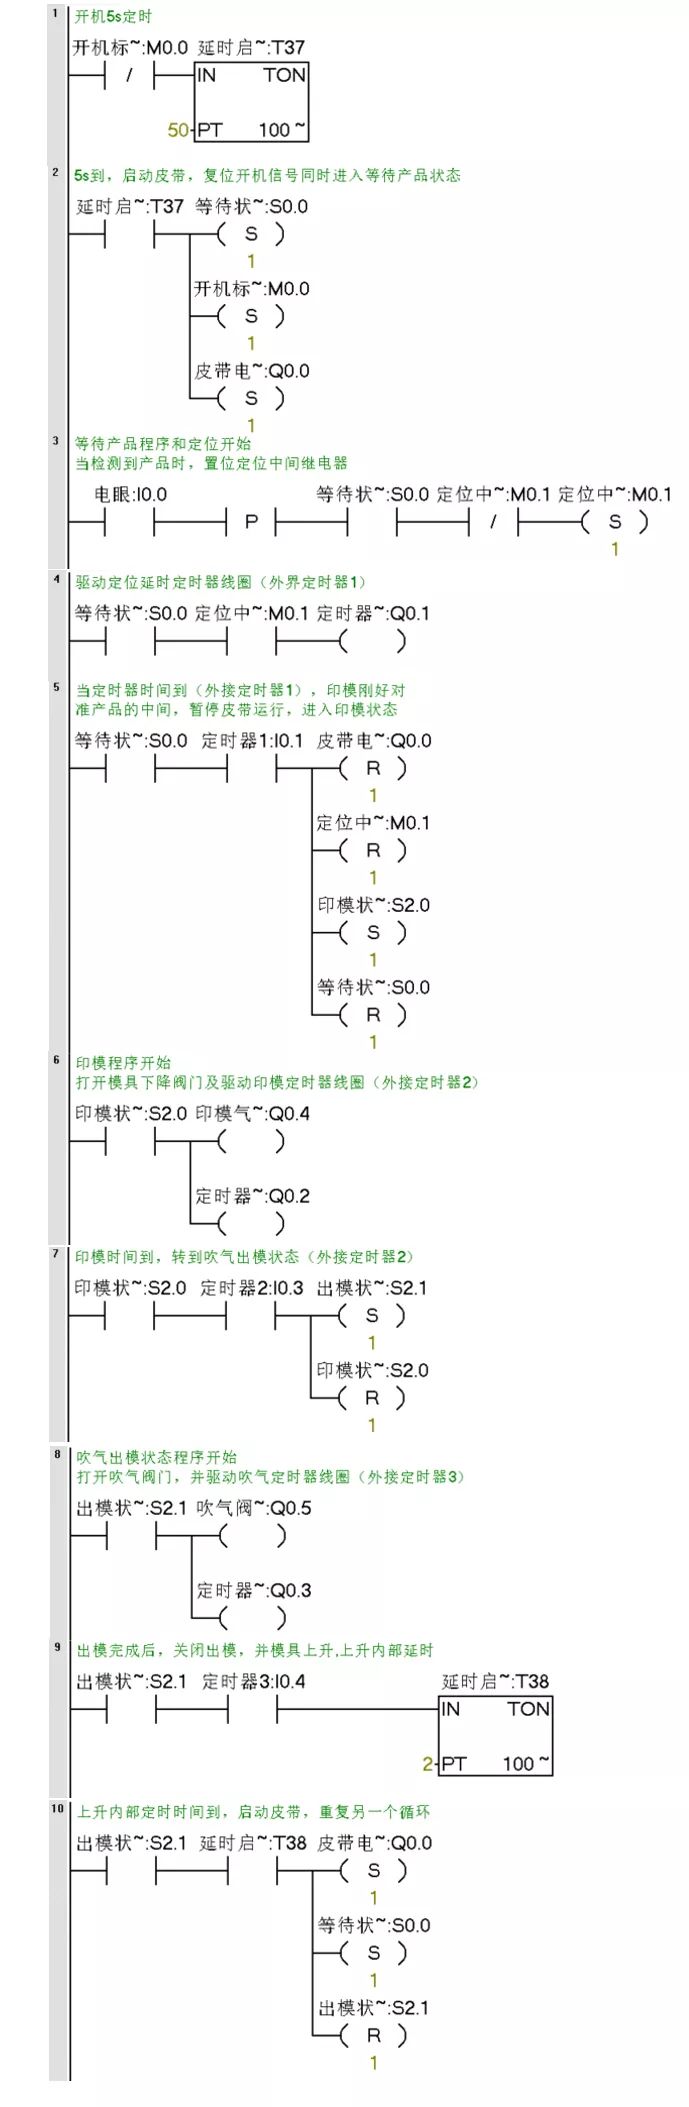 西门子PLC编程实例分析,73b4ea82-05da-11ed-ba43-dac502259ad0.jpg,第8张